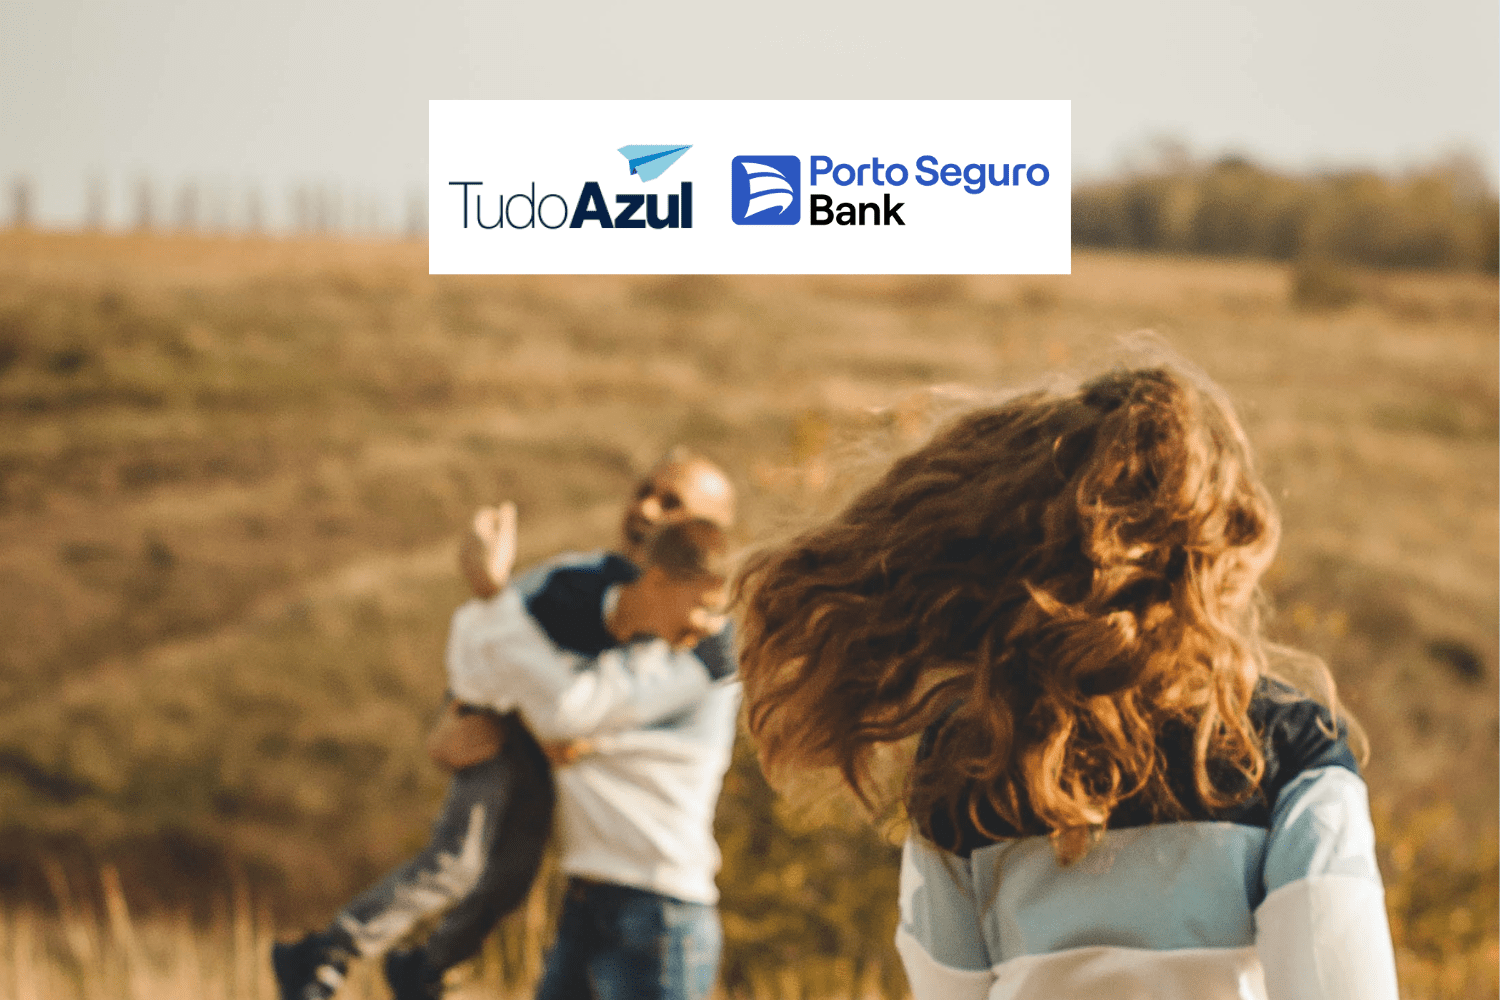 família feliz em um jardim com logo TudoAzul e Porto Bank bônus TudoAzul